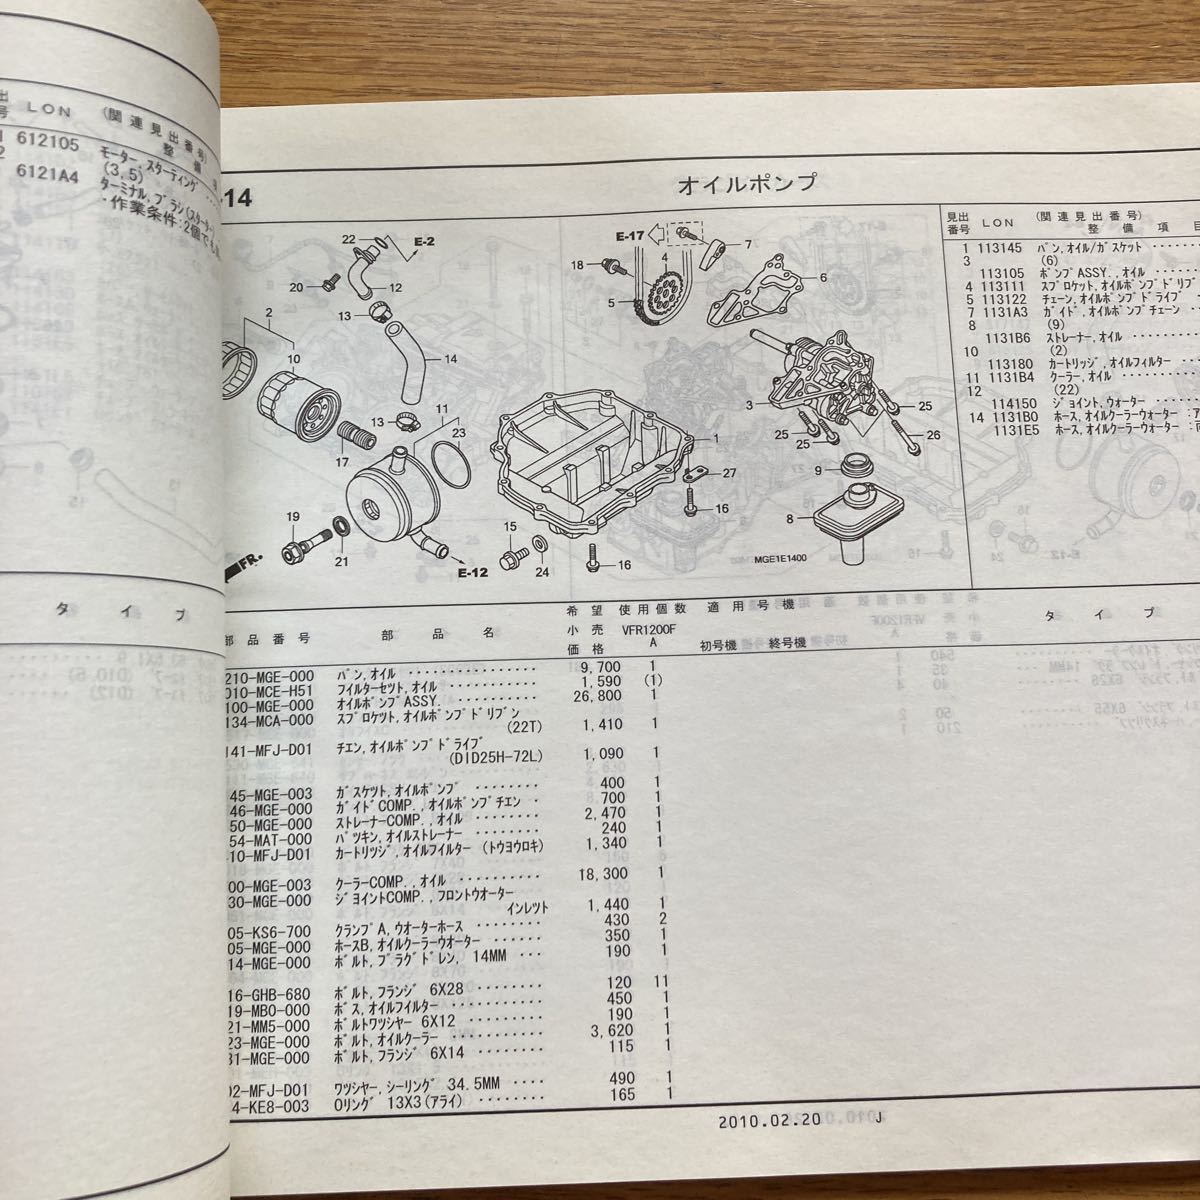  Запчасти  каталог   список запасных частей  VFR1200F SC63 1 издание  11MGEA01   схема разбора 